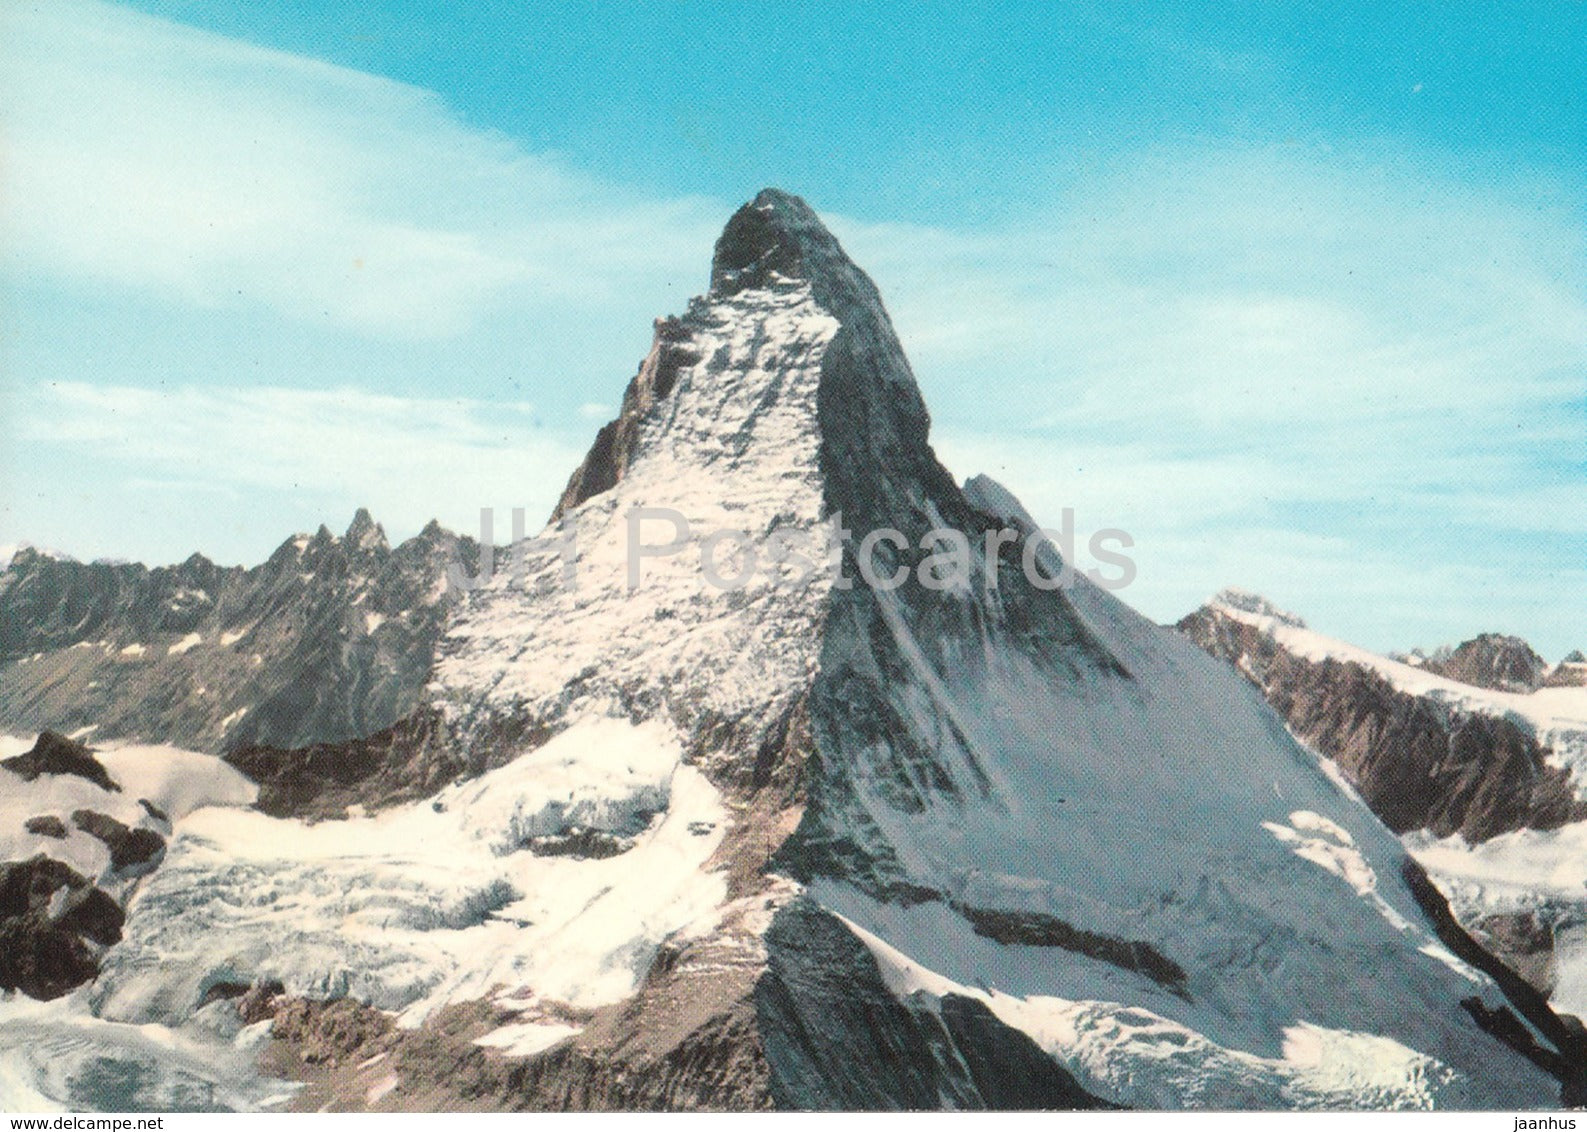 Matterhorn vom Gornergrat 4476 m - 1121 - Switzerland - unused - JH Postcards